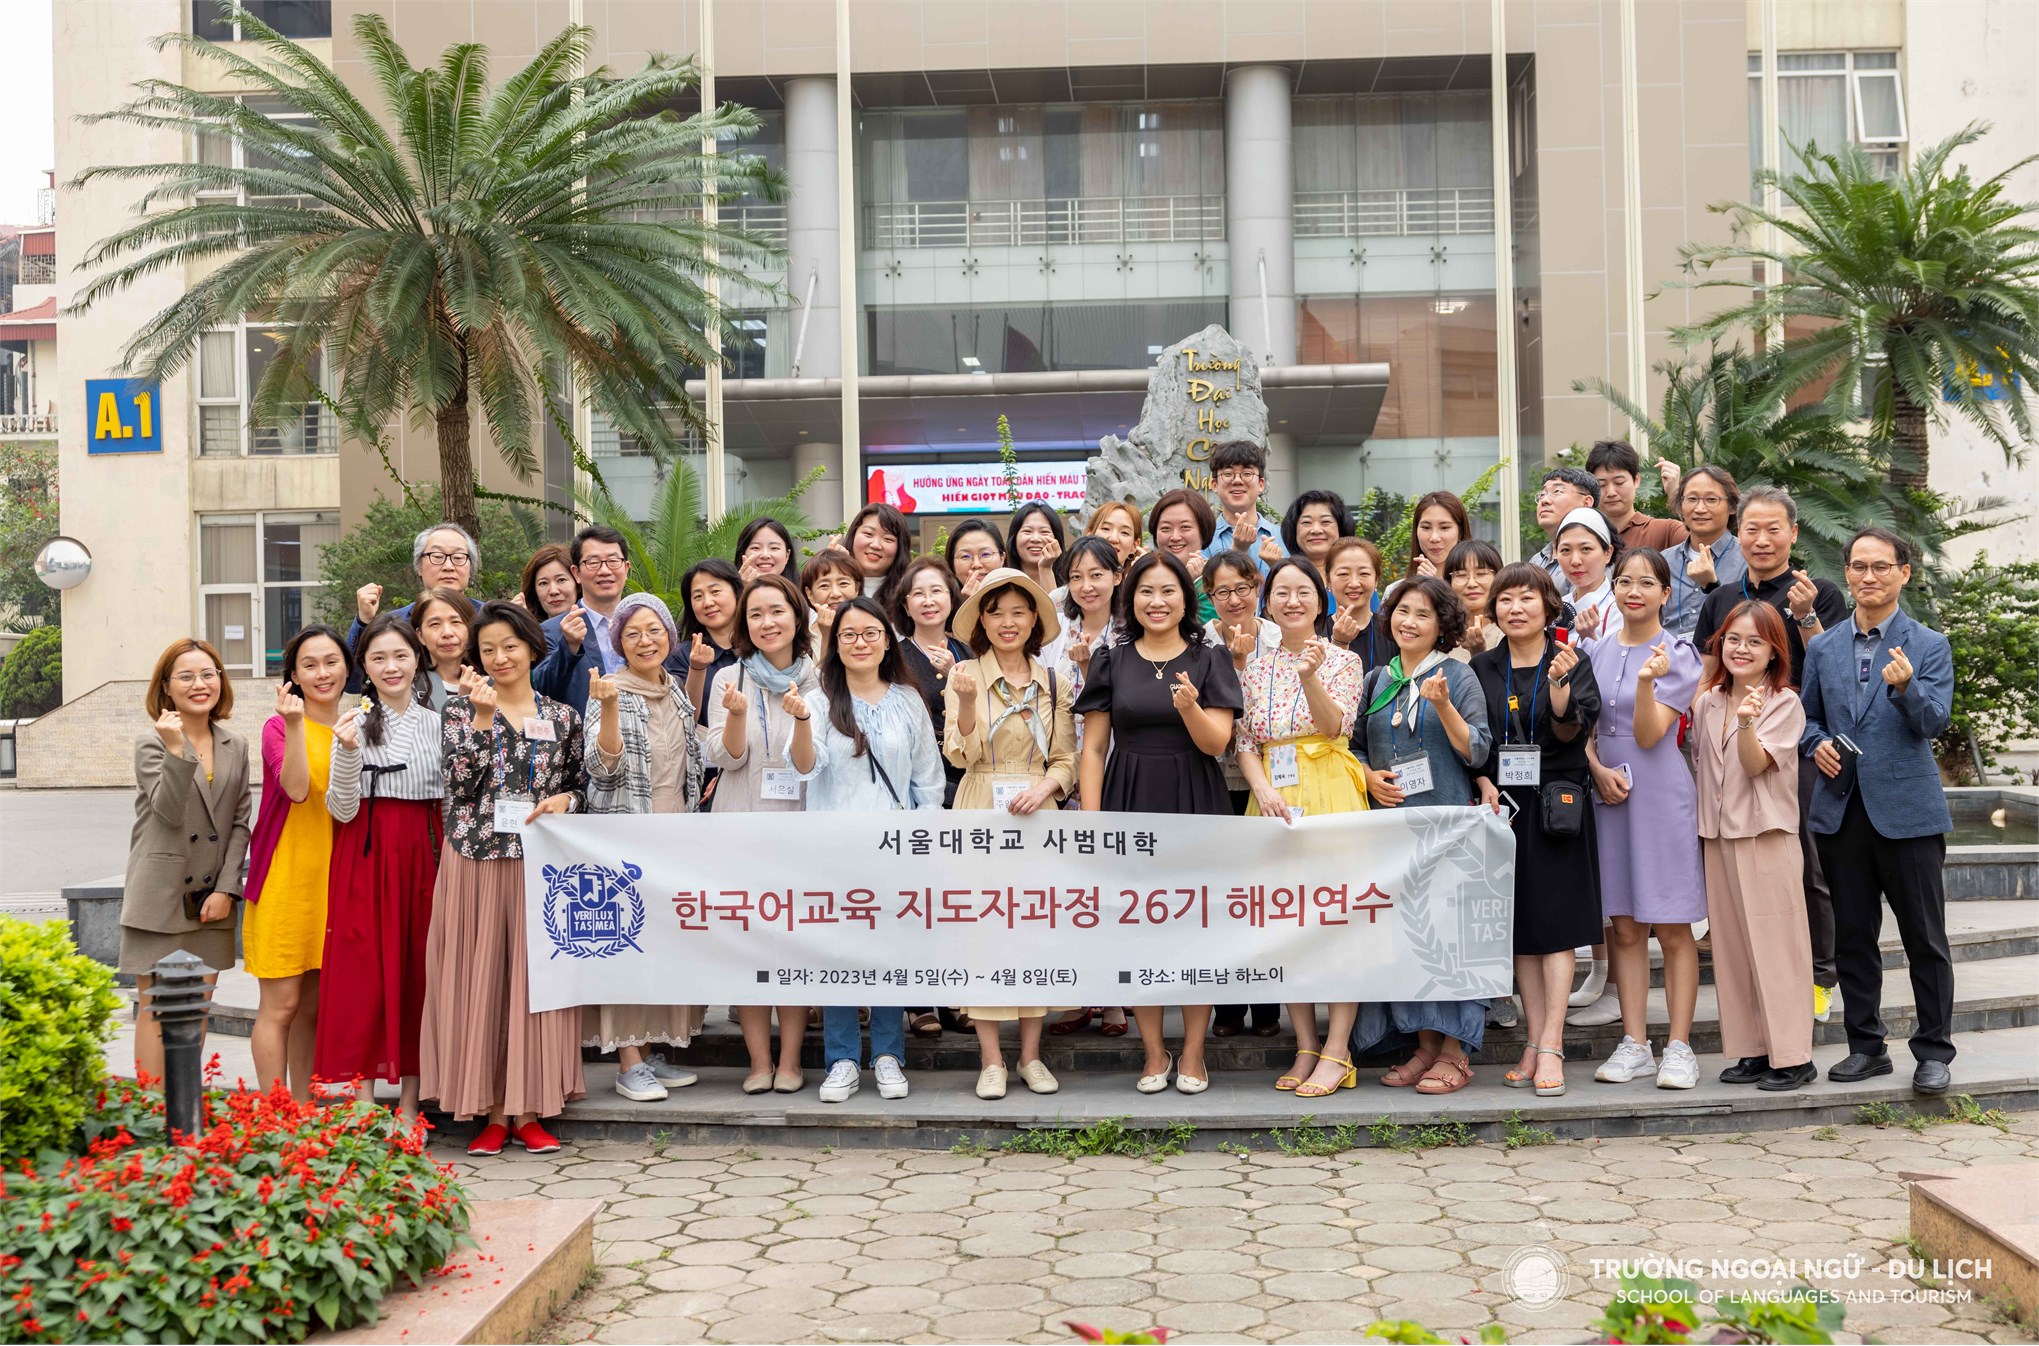 Trường Ngoại ngữ - Du lịch tiếp đón đoàn giáo sinh của Trường Đại học Sư phạm - Đại học Quốc gia Seoul tới tham quan, giao lưu văn hoá và trao đổi phương pháp giảng dạy